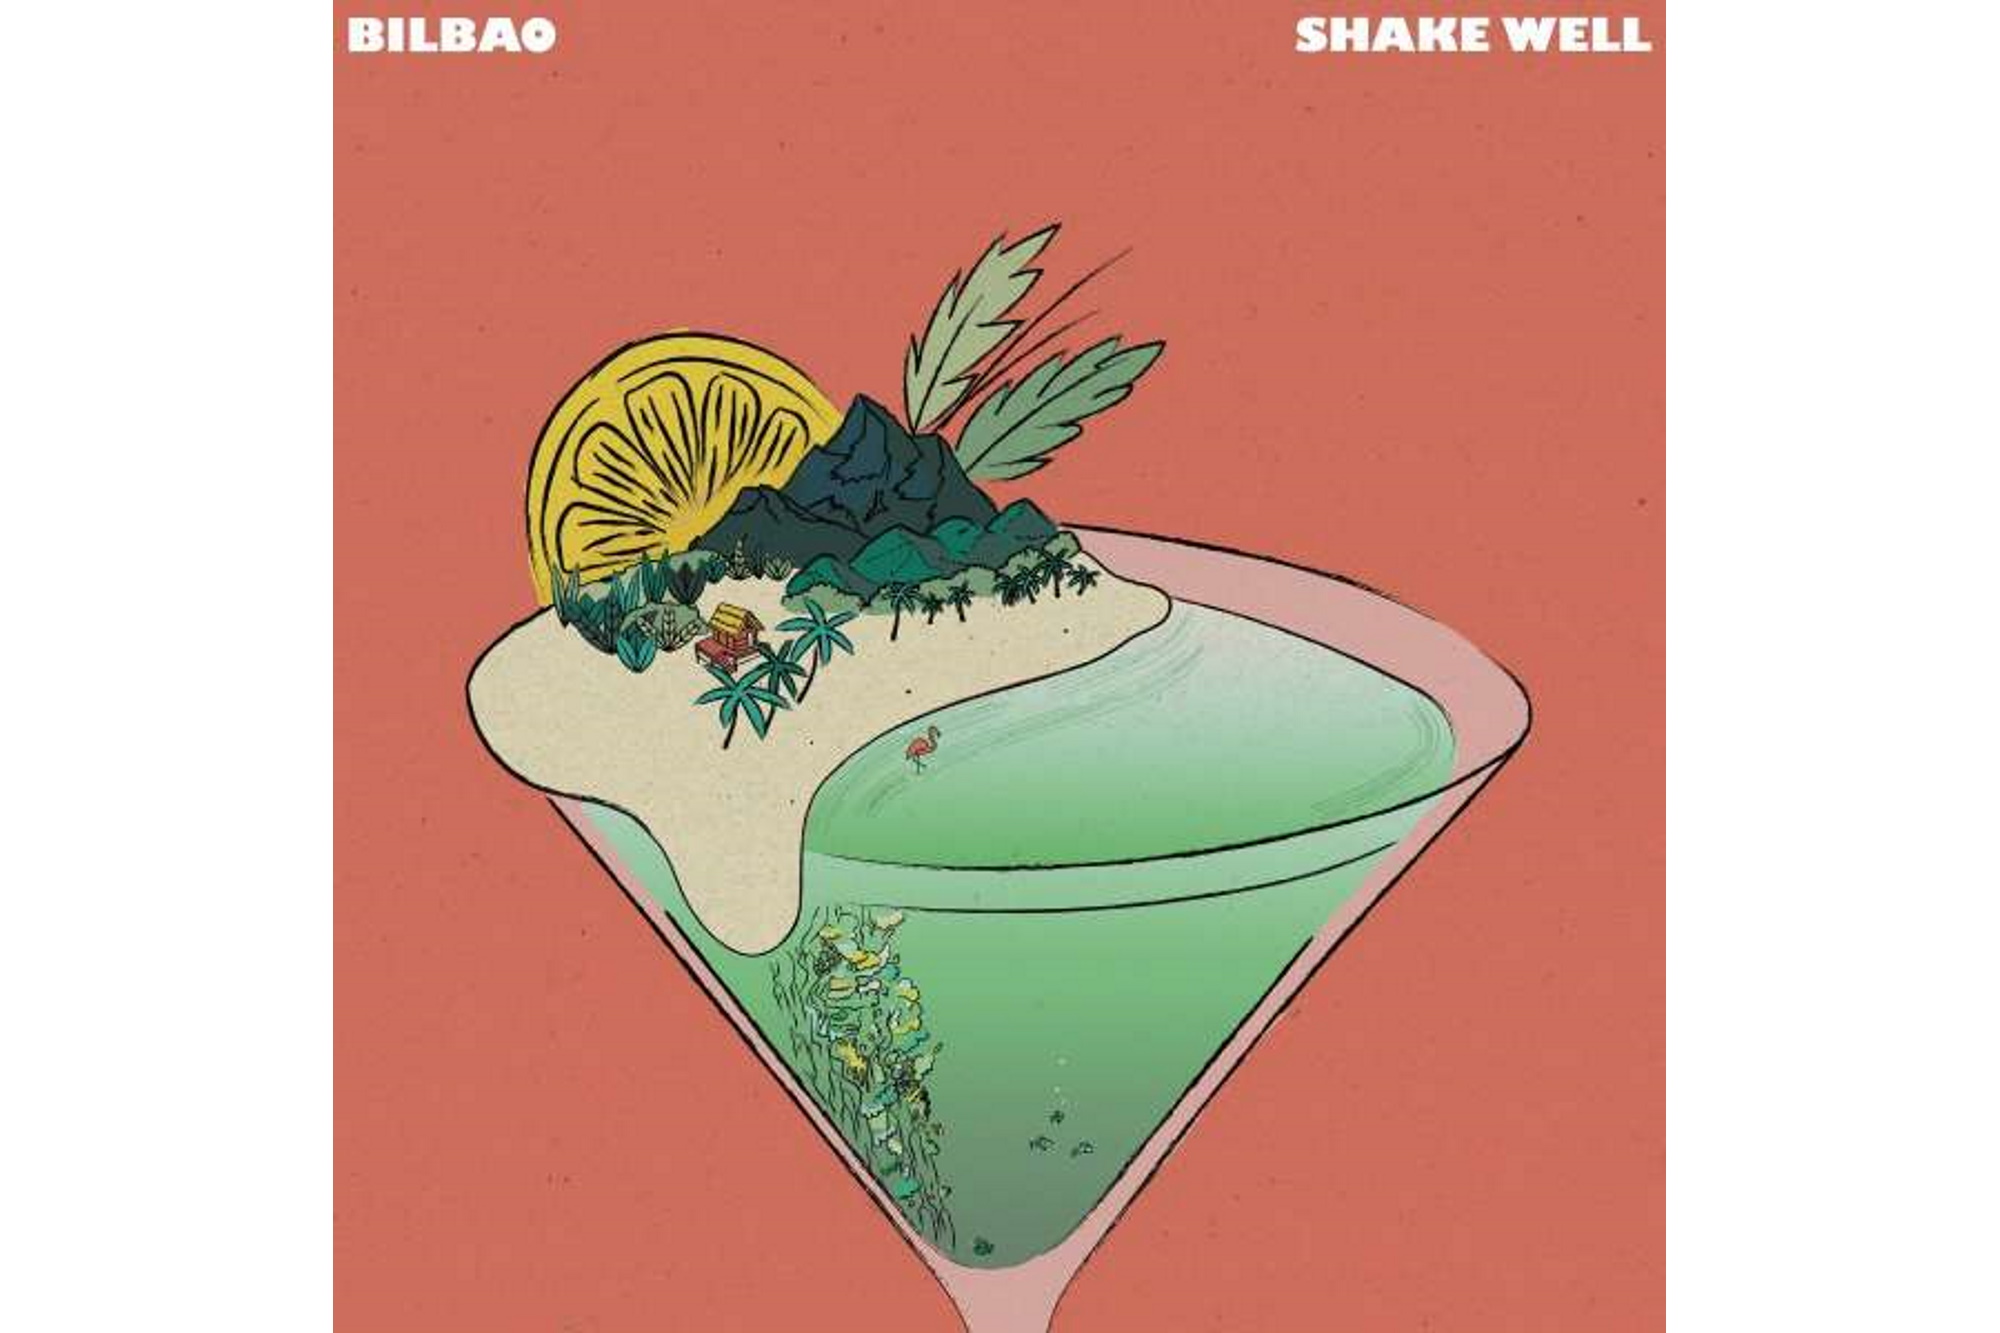 Bilbao - Shake Well